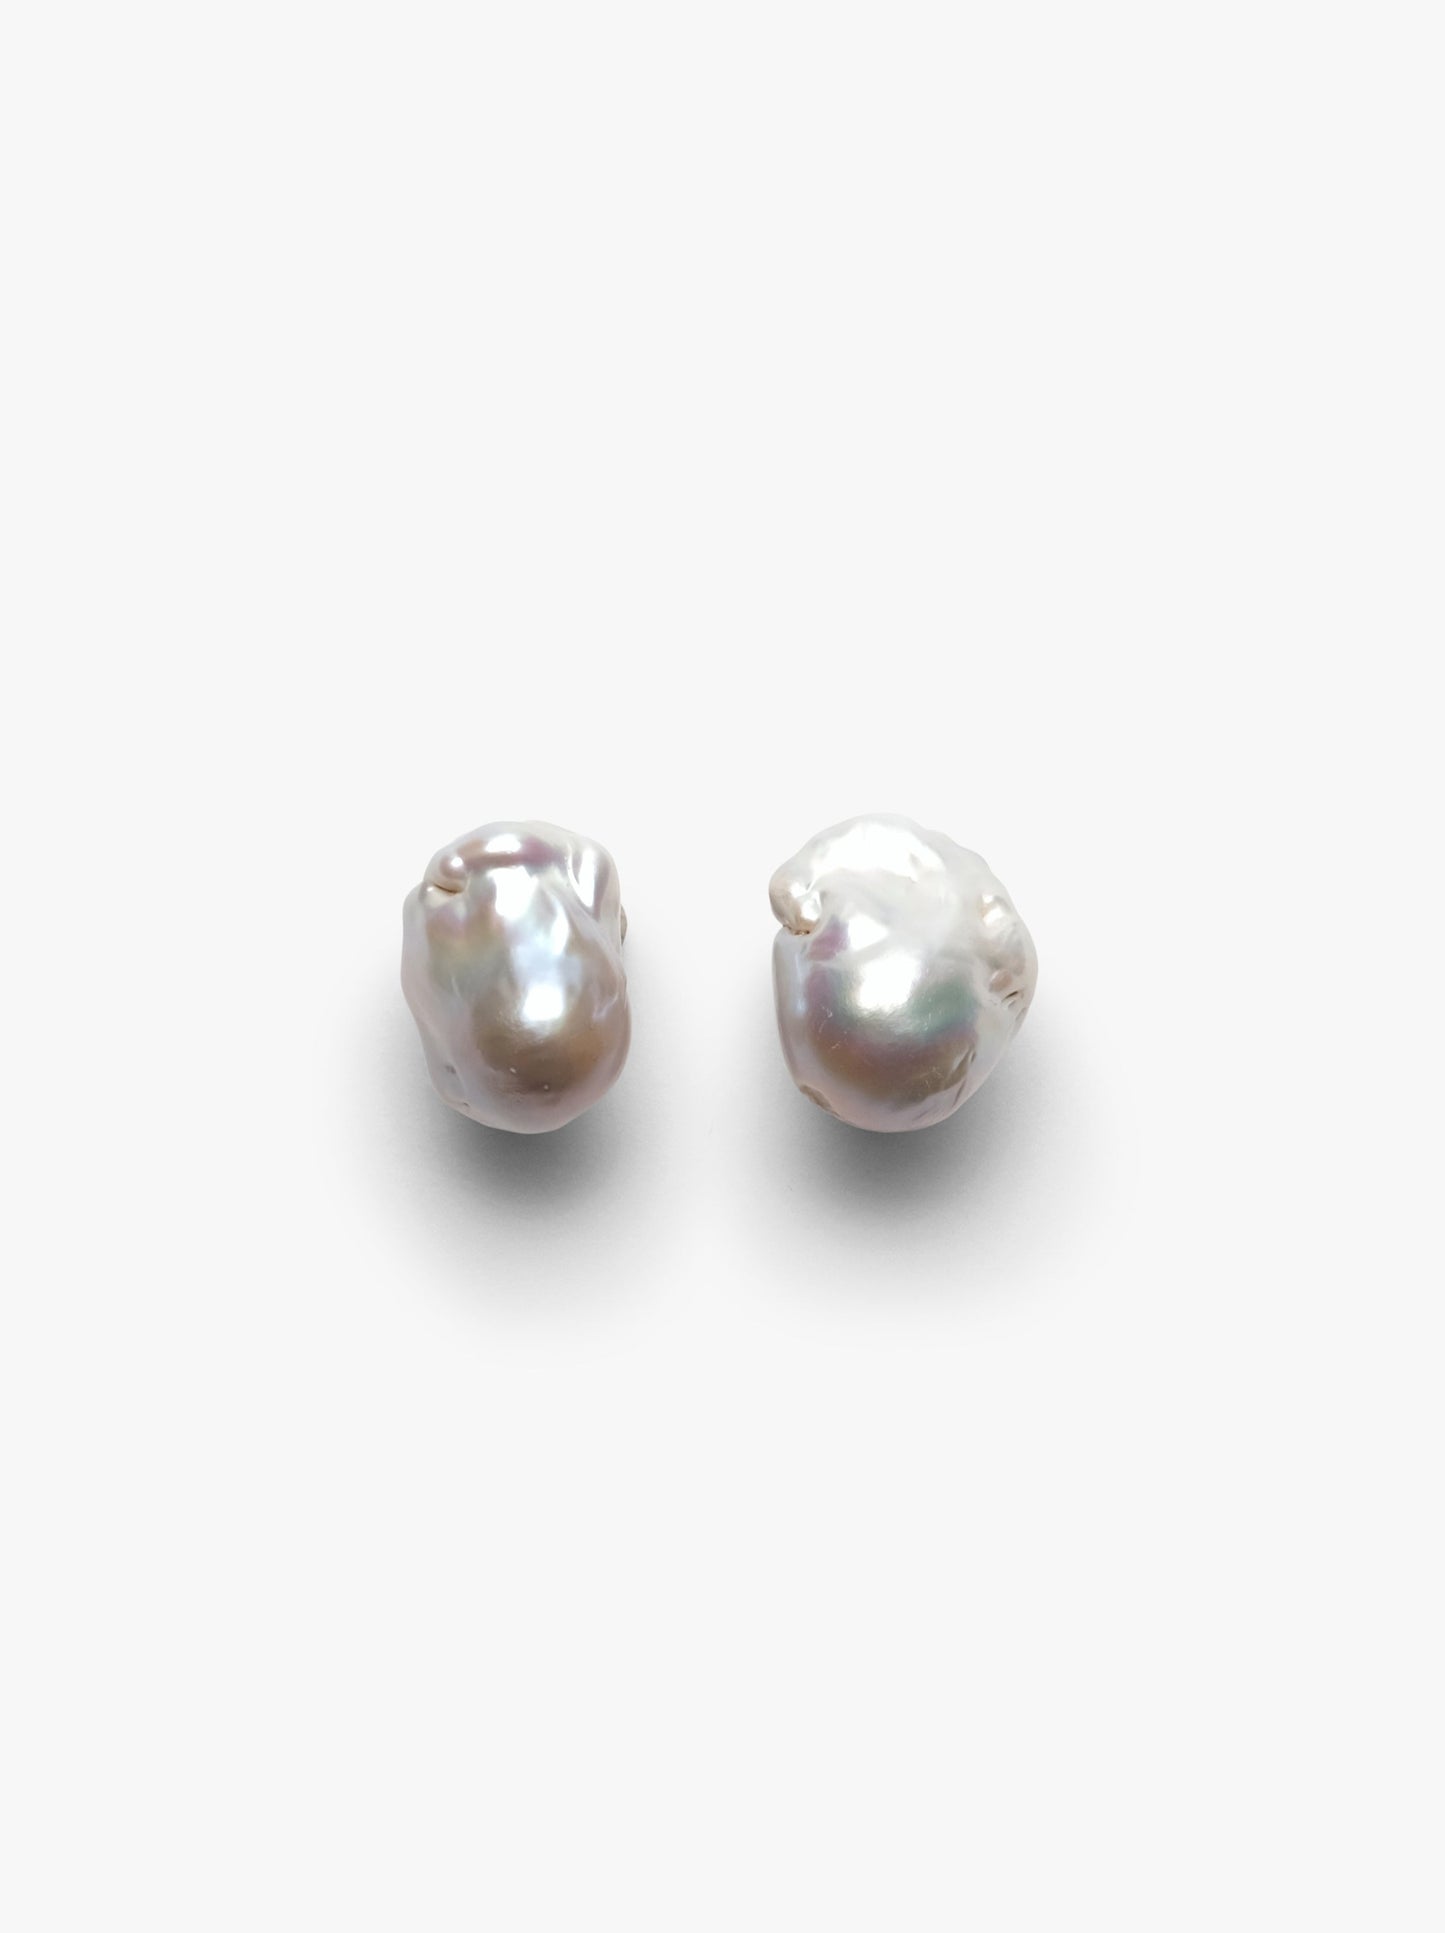 Stud earrings: baroque pearl